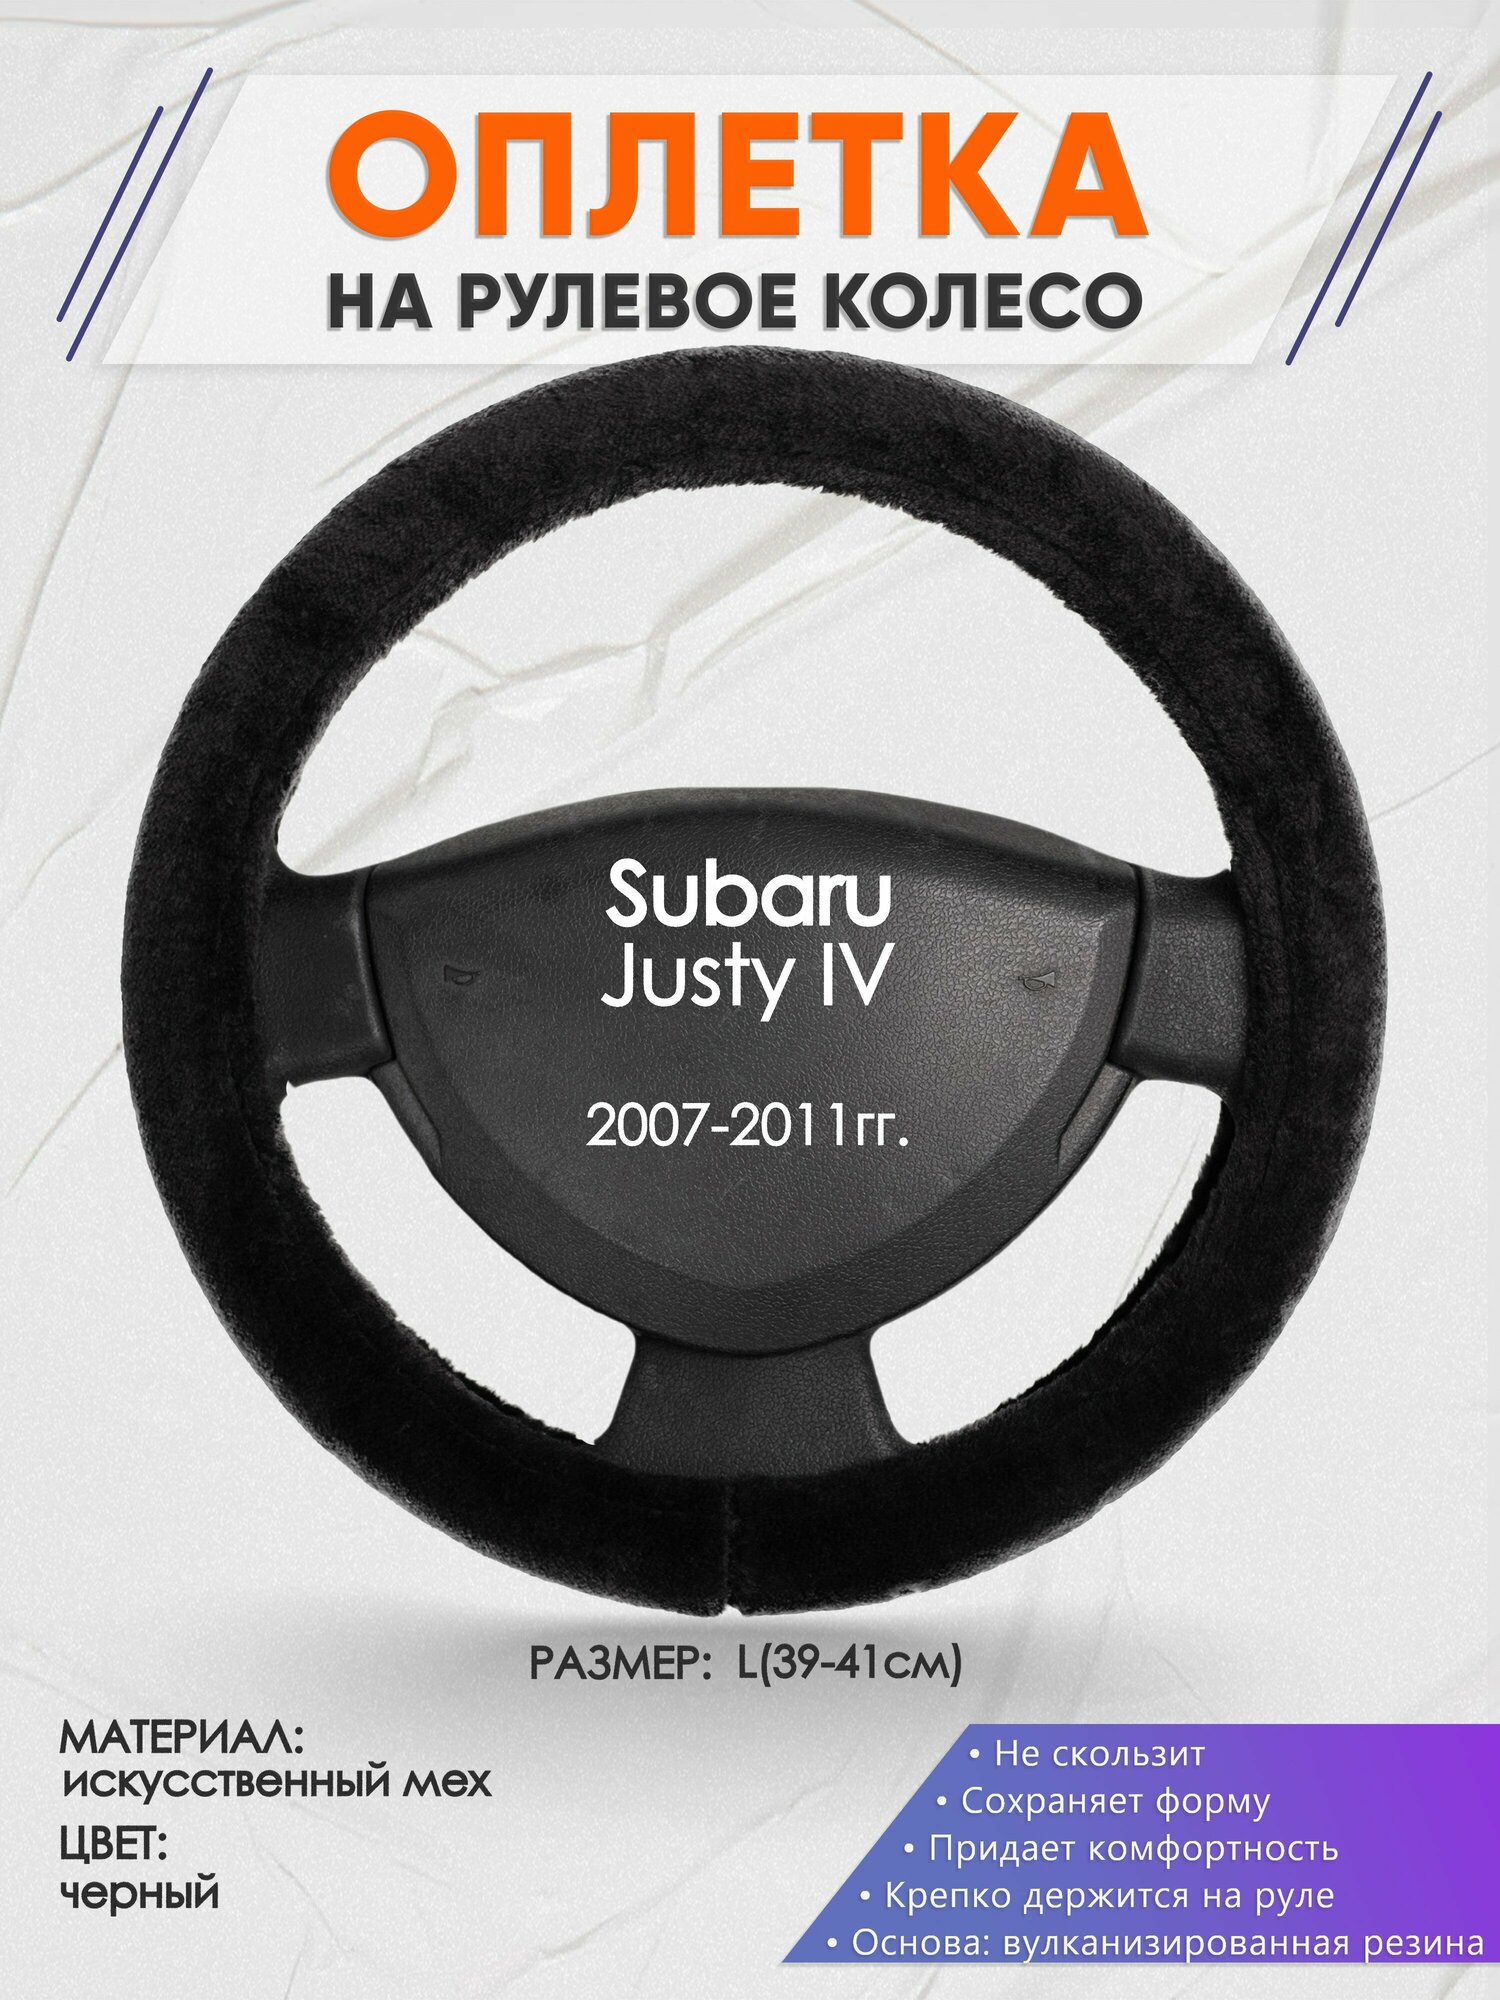 Оплетка на руль для Subaru Justy 4(Субару Джасти) 2007-2011, L(39-41см), Искусственный мех 45